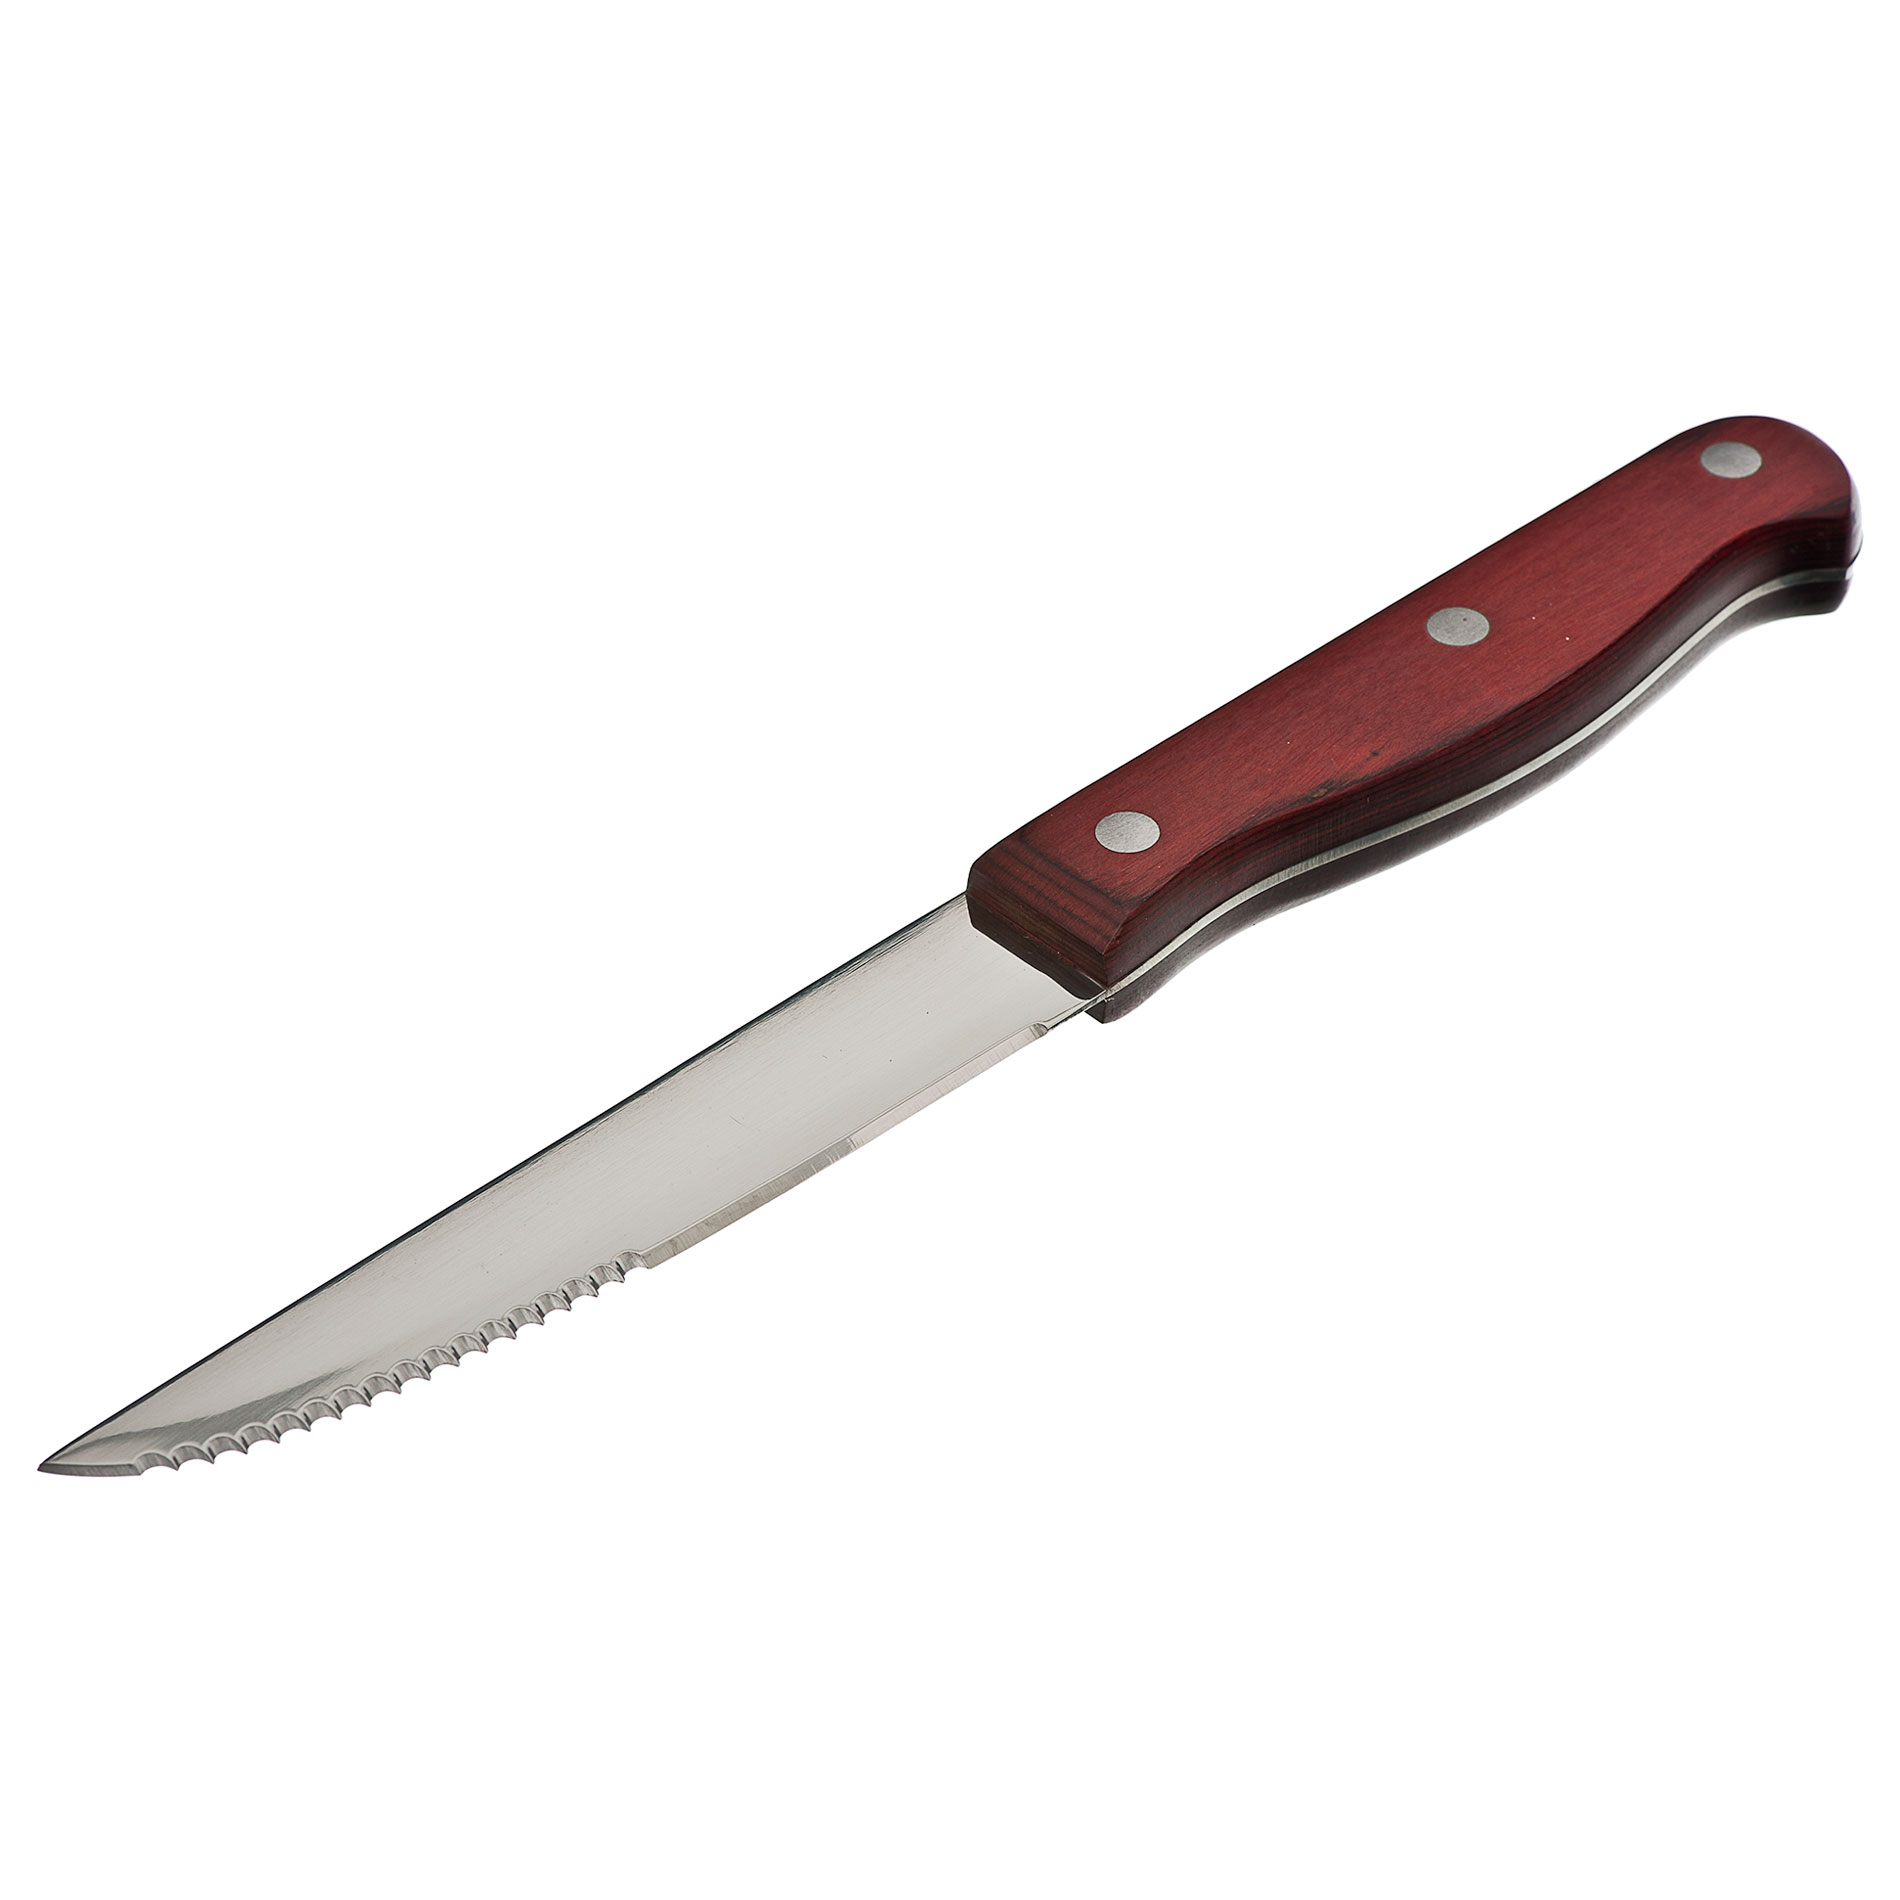 Knife clipart steak knife #2